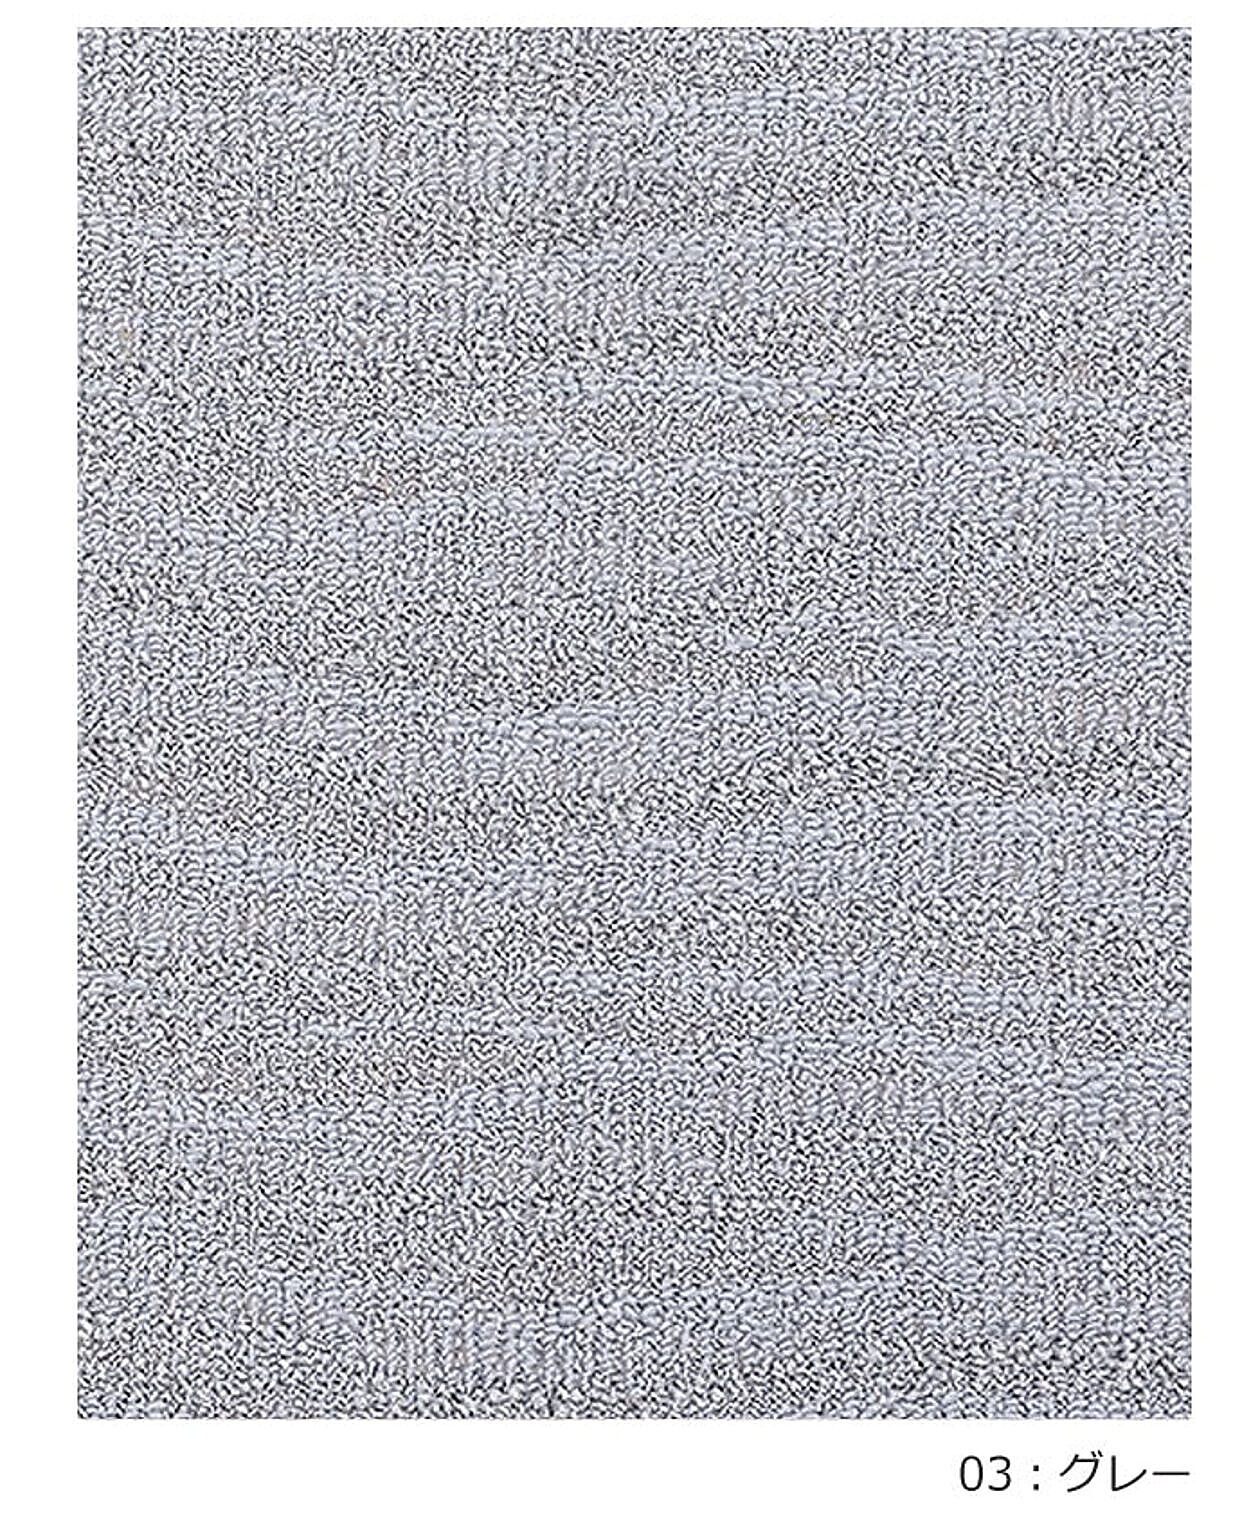 ラグ ラグマット 絨毯 日本製 カーペット 北欧 デザイン 防ダニ 抗菌 prevell プレーベル ポート 江戸間8畳 約352×352cm 8帖 8畳 八畳 引っ越し 新生活